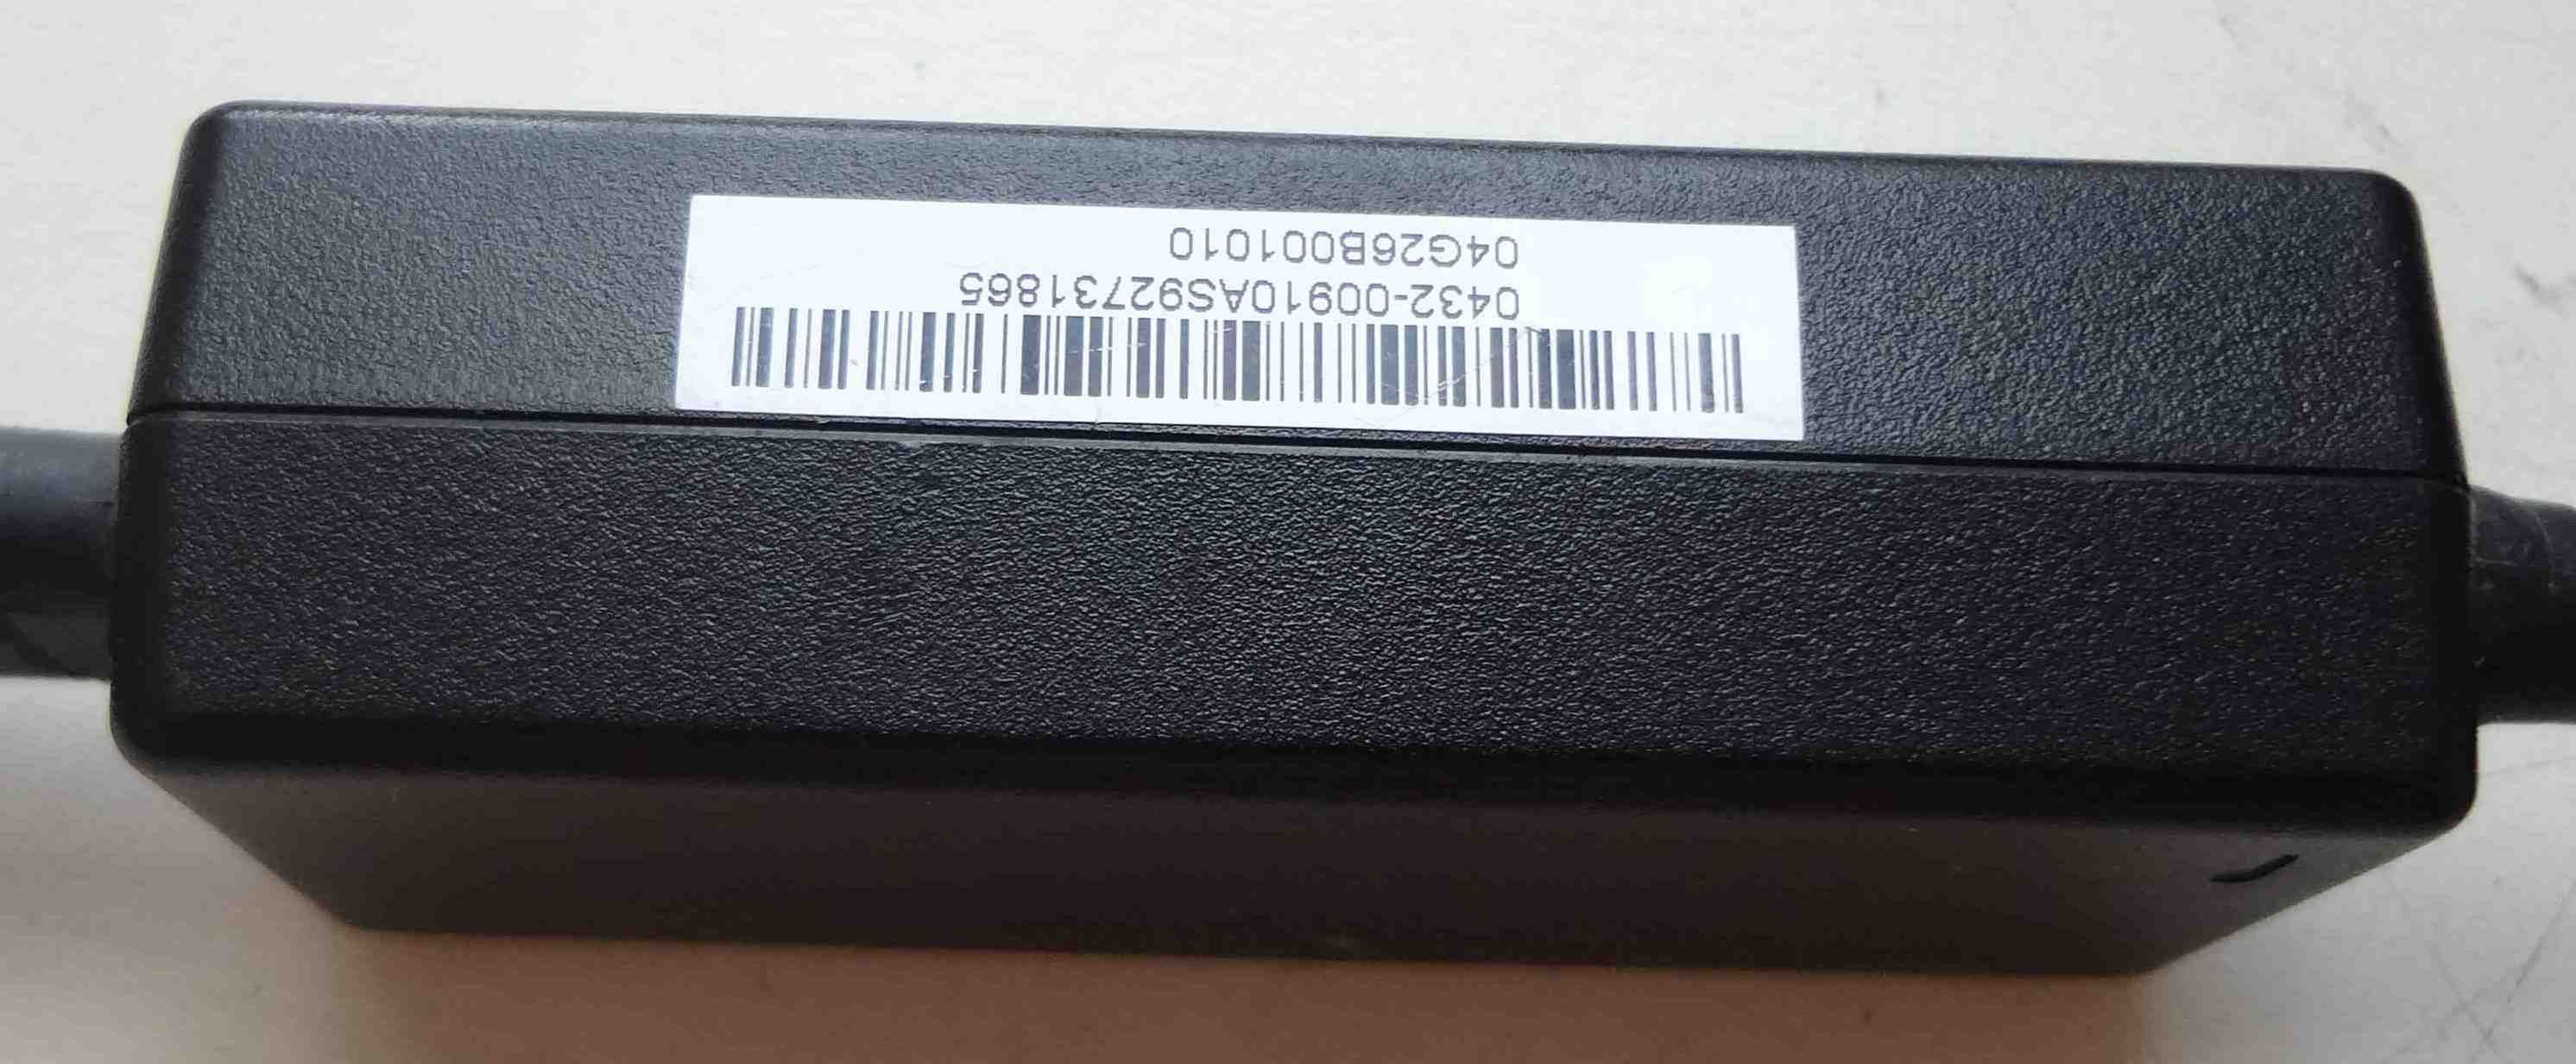 Блок питания Asus 19V 2.1A AD6630 адаптер